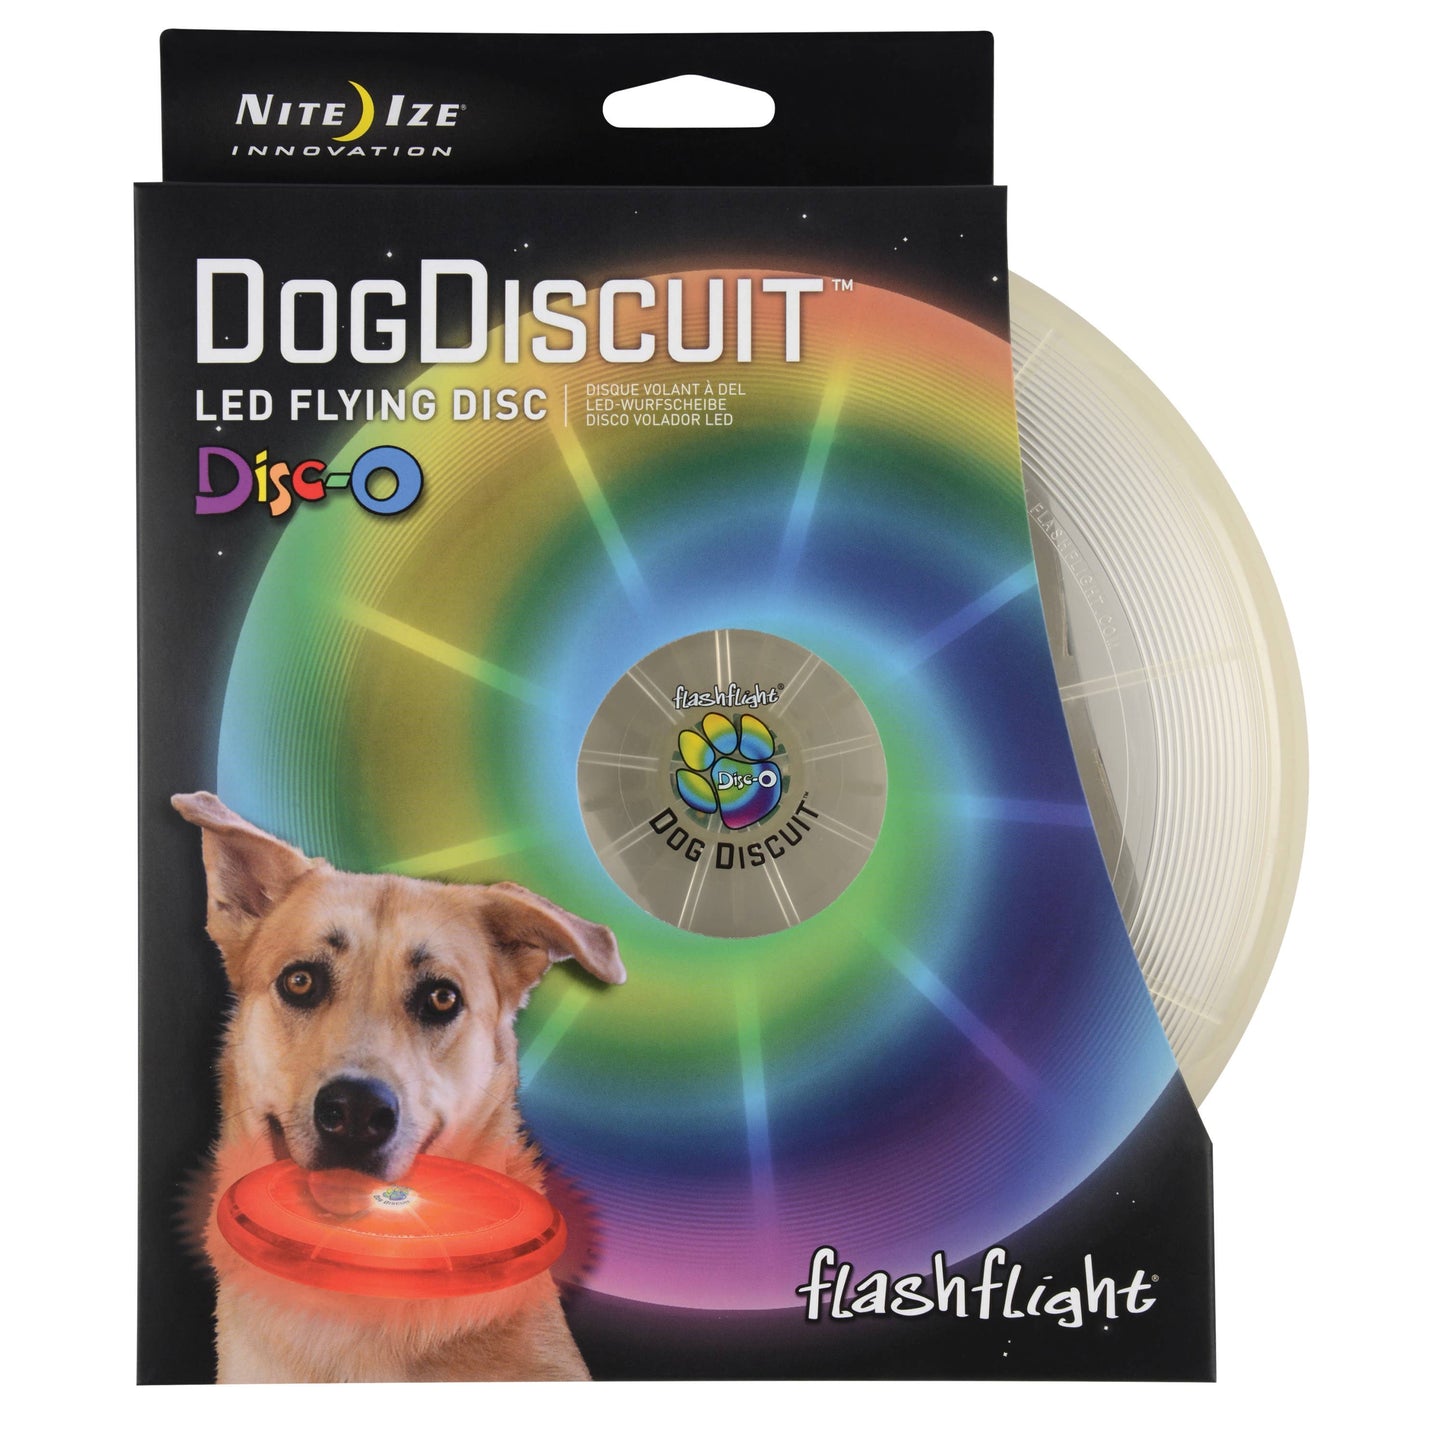 Nite Ize Flashflight Dog Discuit LED Flying Disc - Disc-O